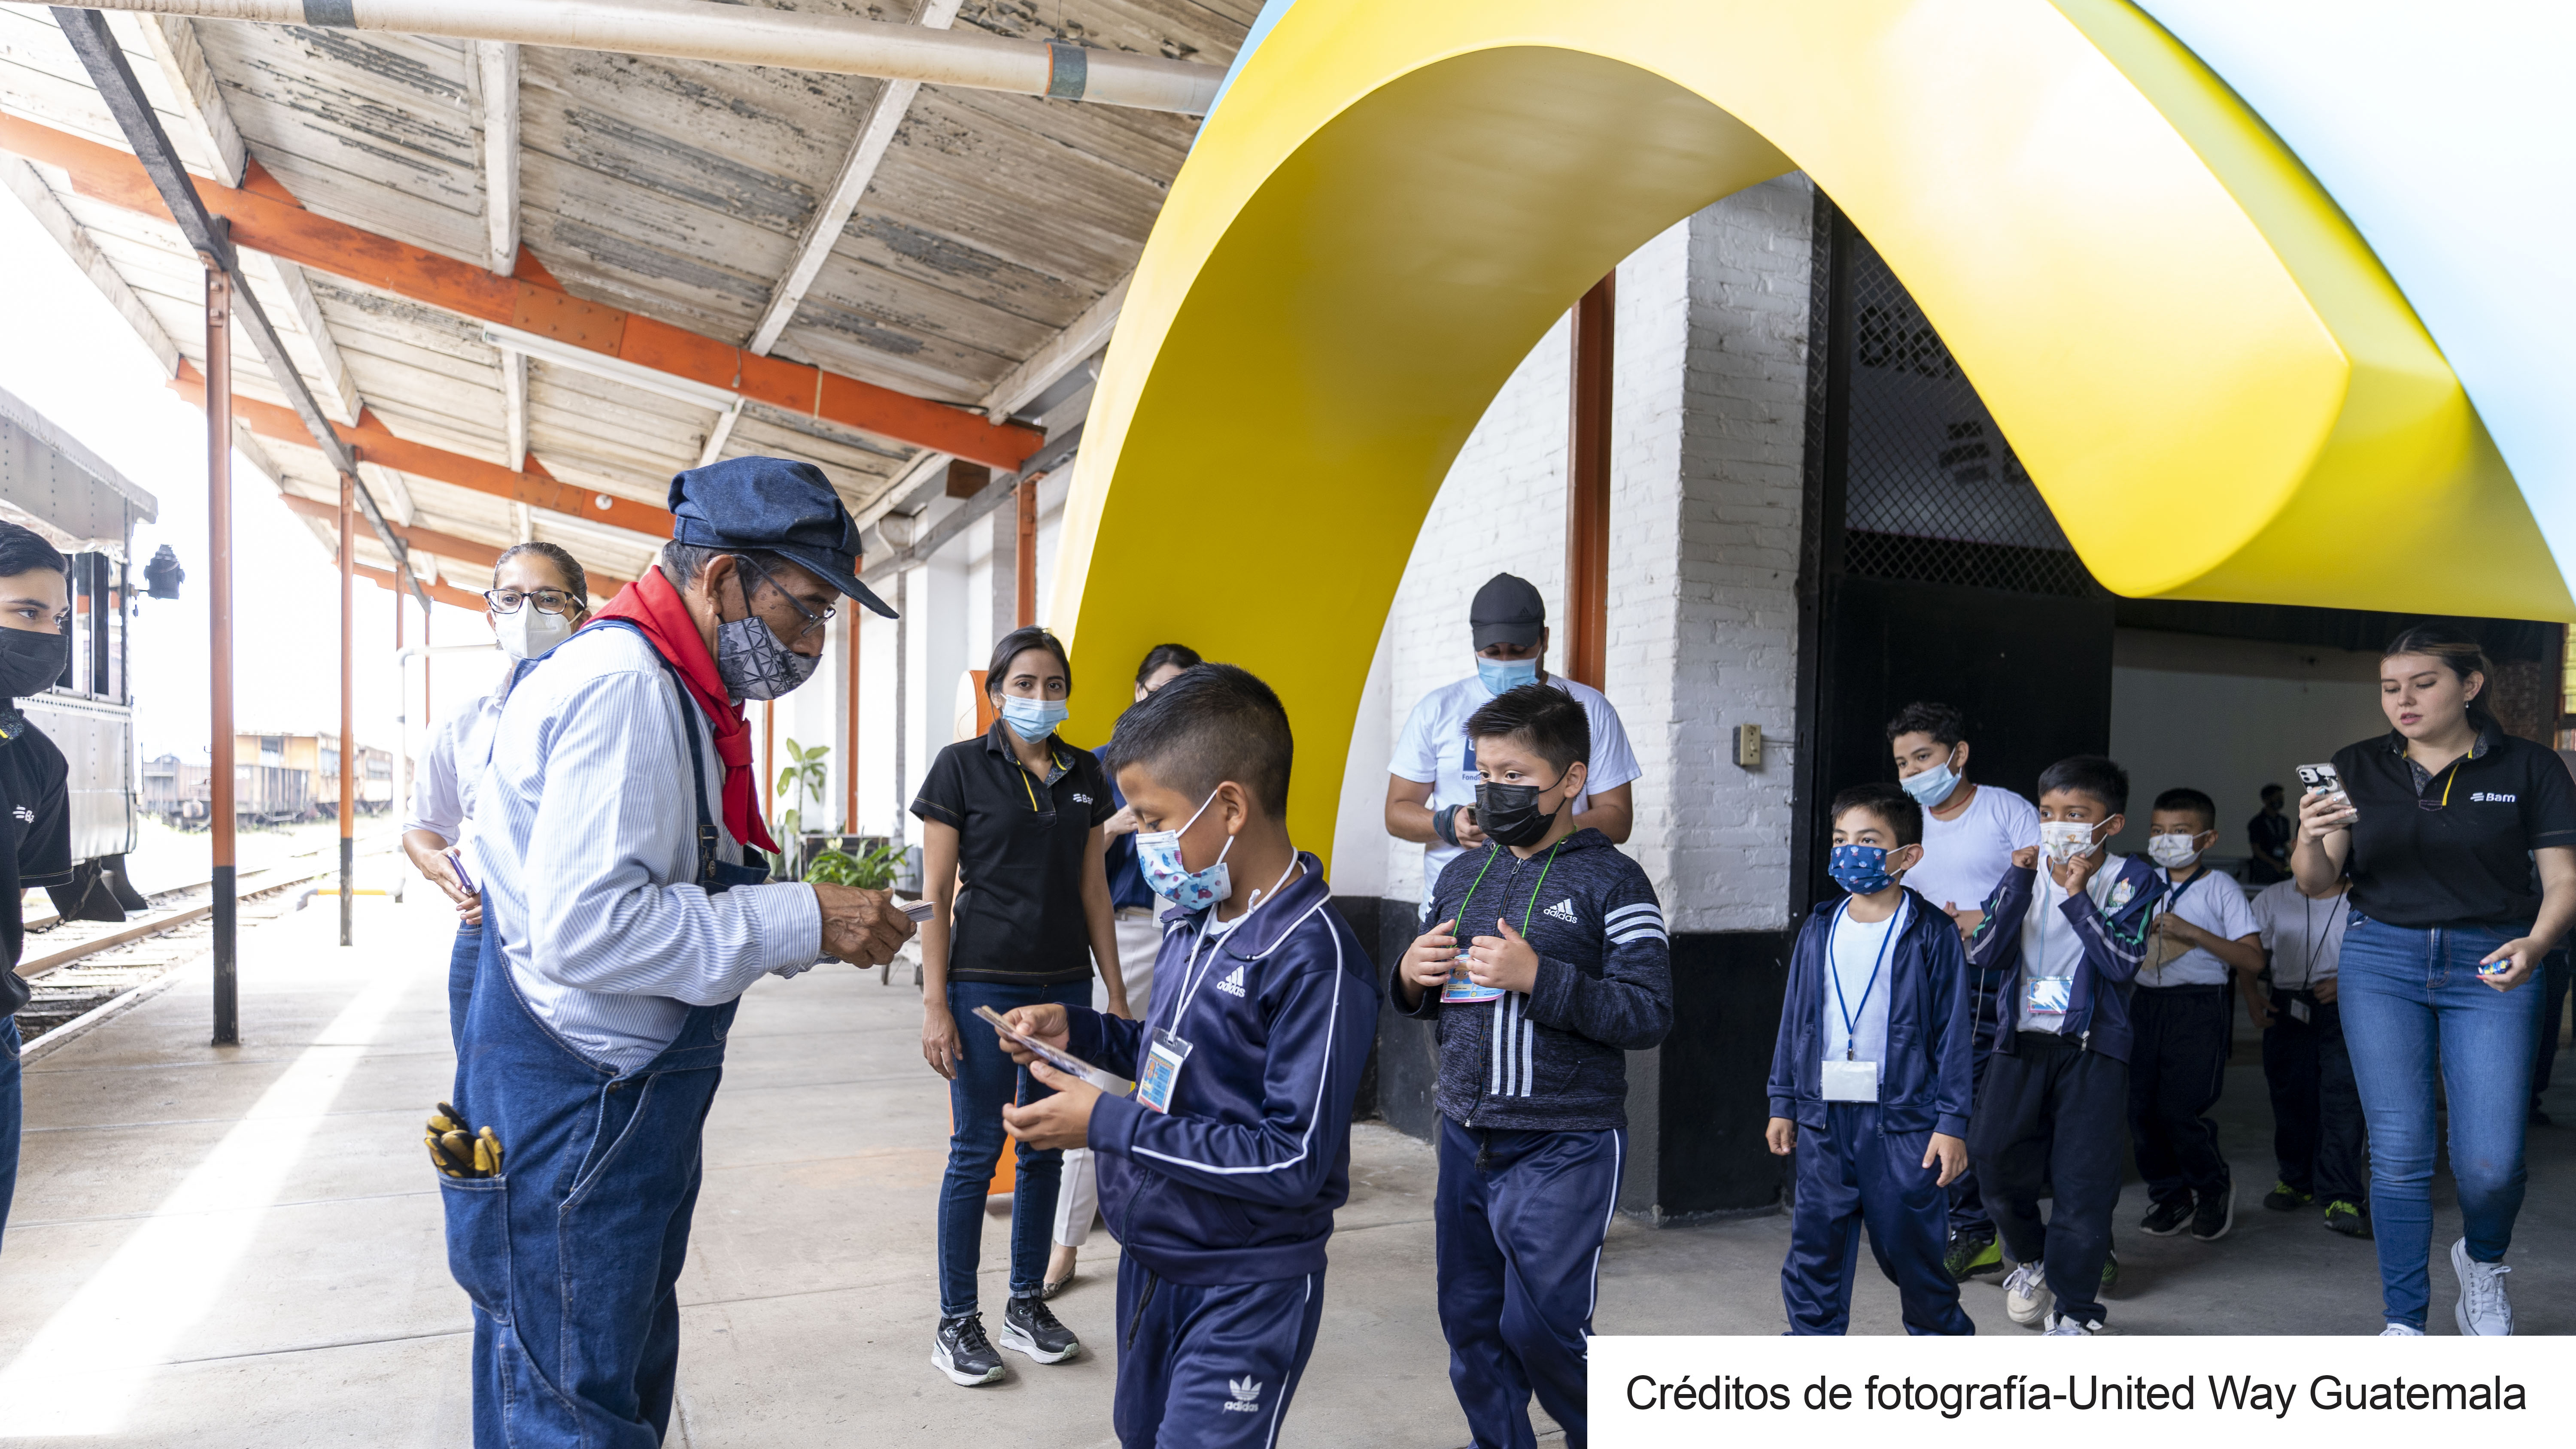 Bam y United Way Guatemala comparten un día divertido y de aprendizaje con niños, en La Ruta al Bienestar Bam